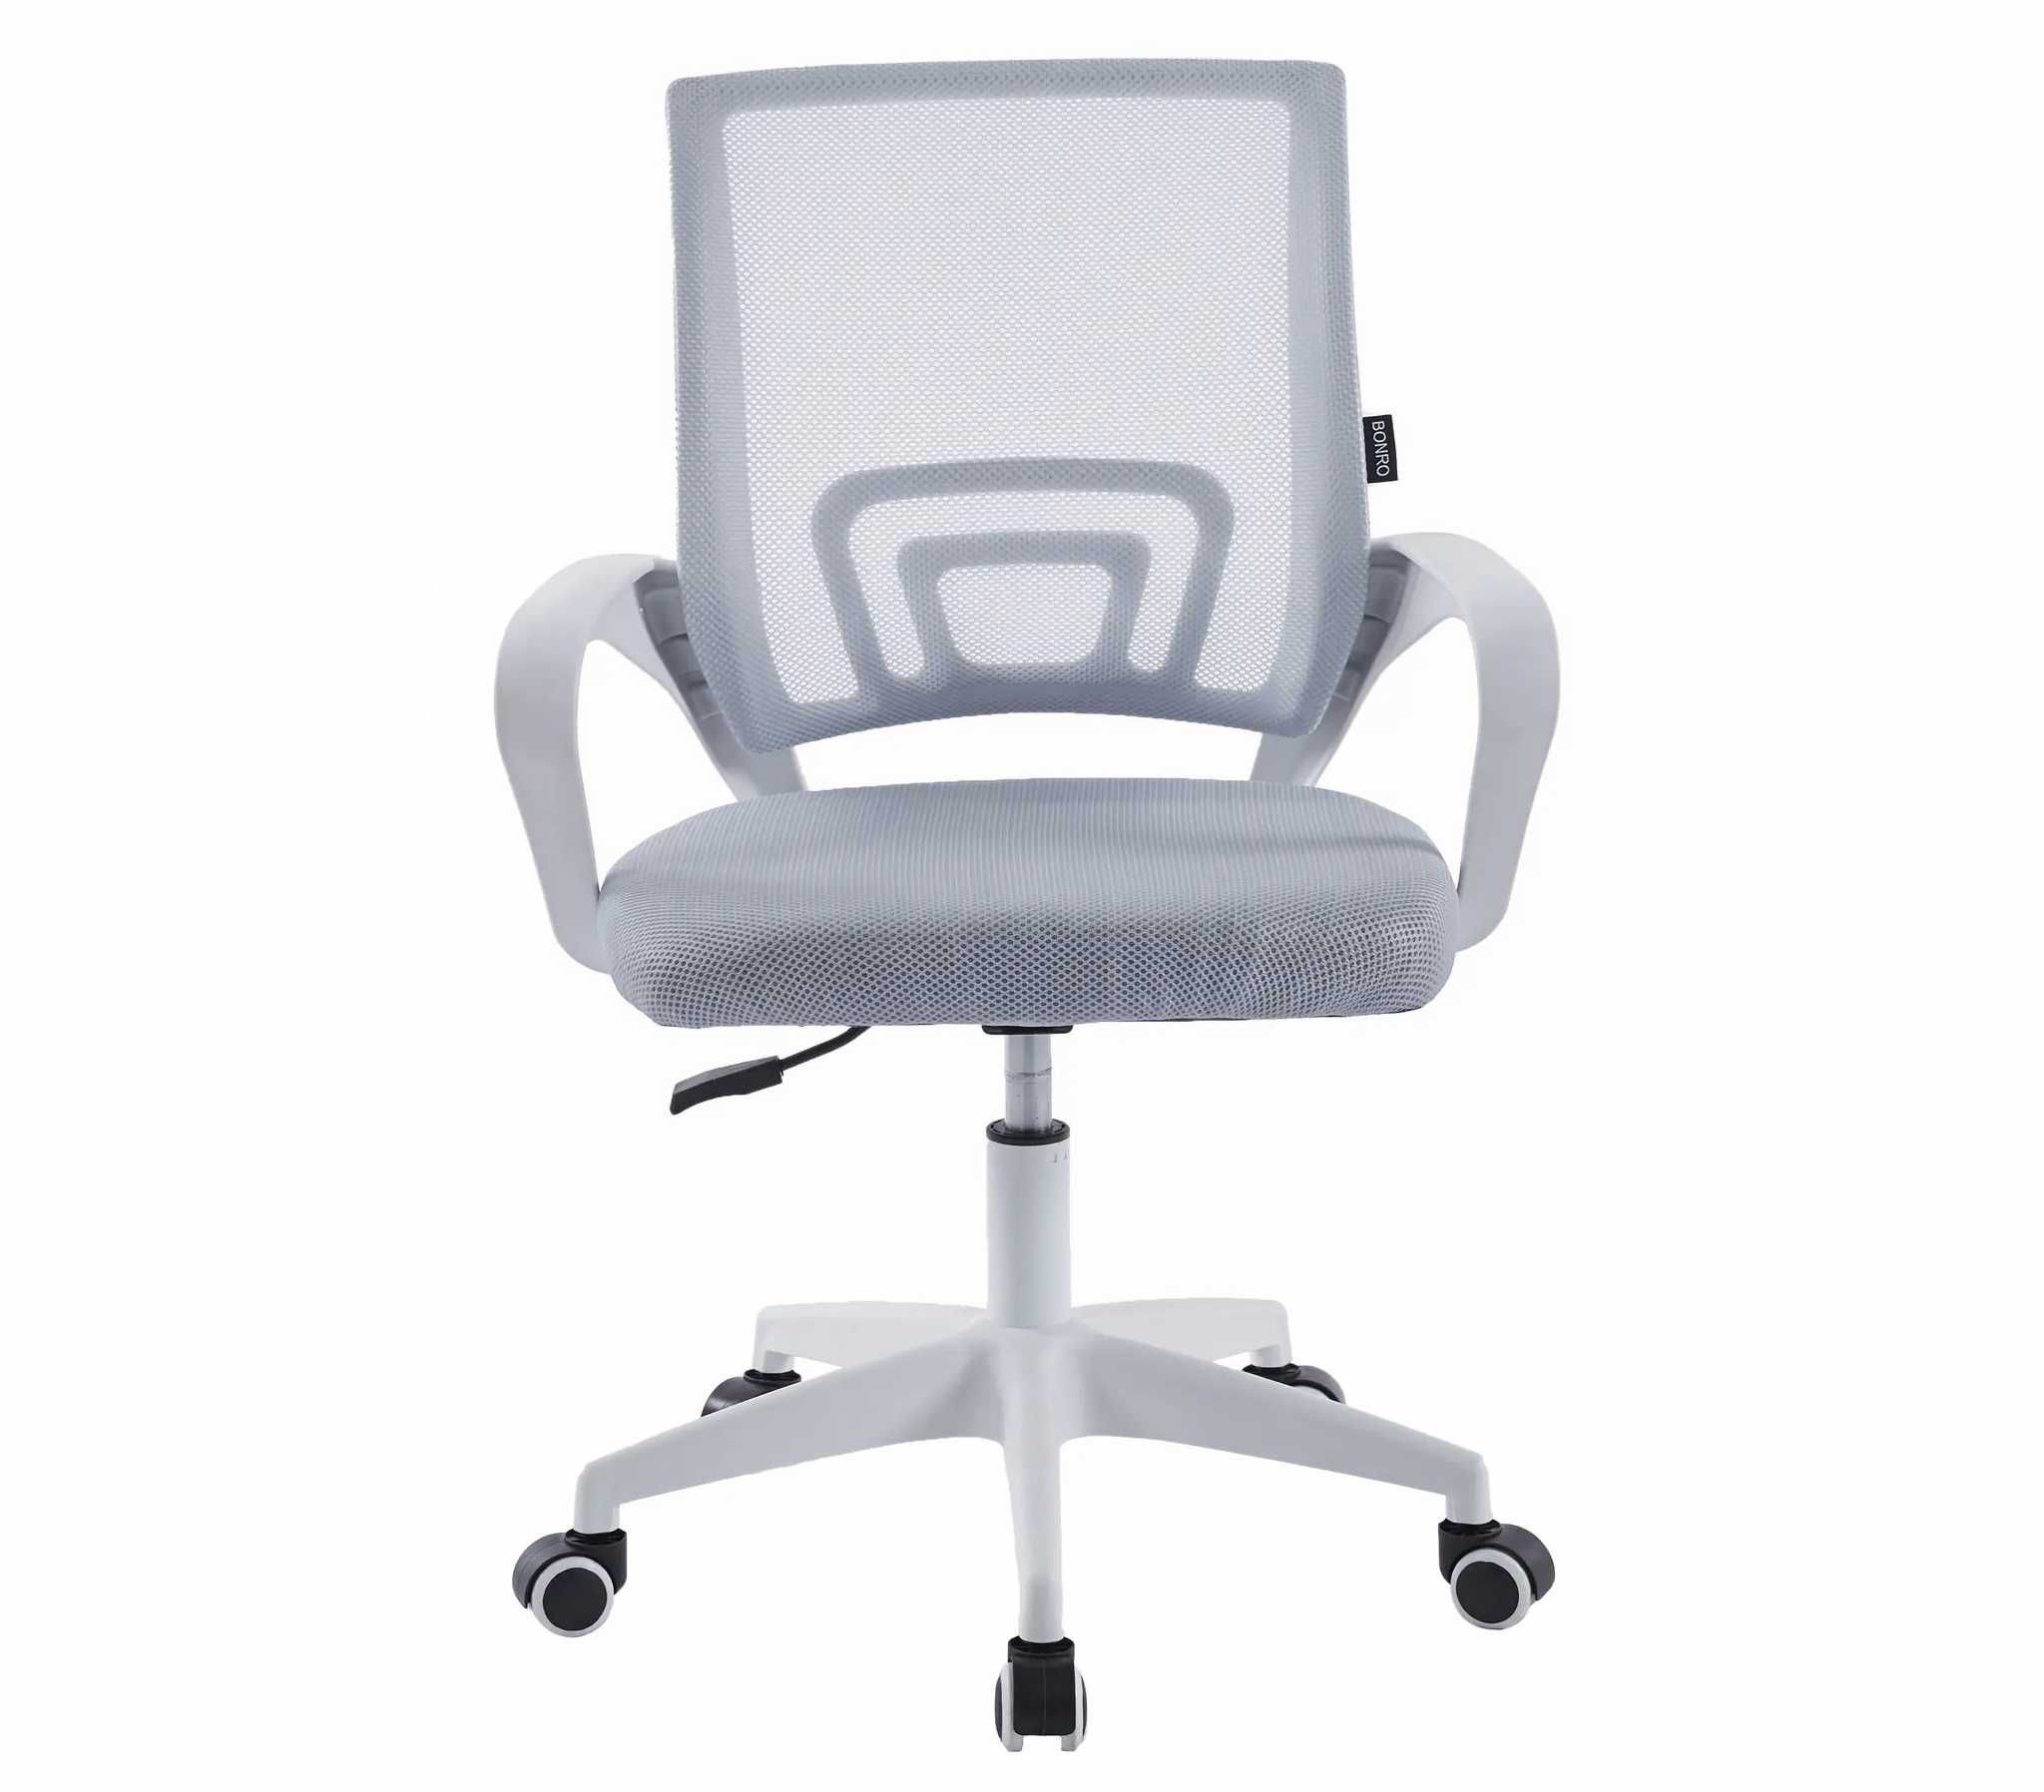 Стул для офиса серый+белый компьютерный на колесах Vertigo кресло